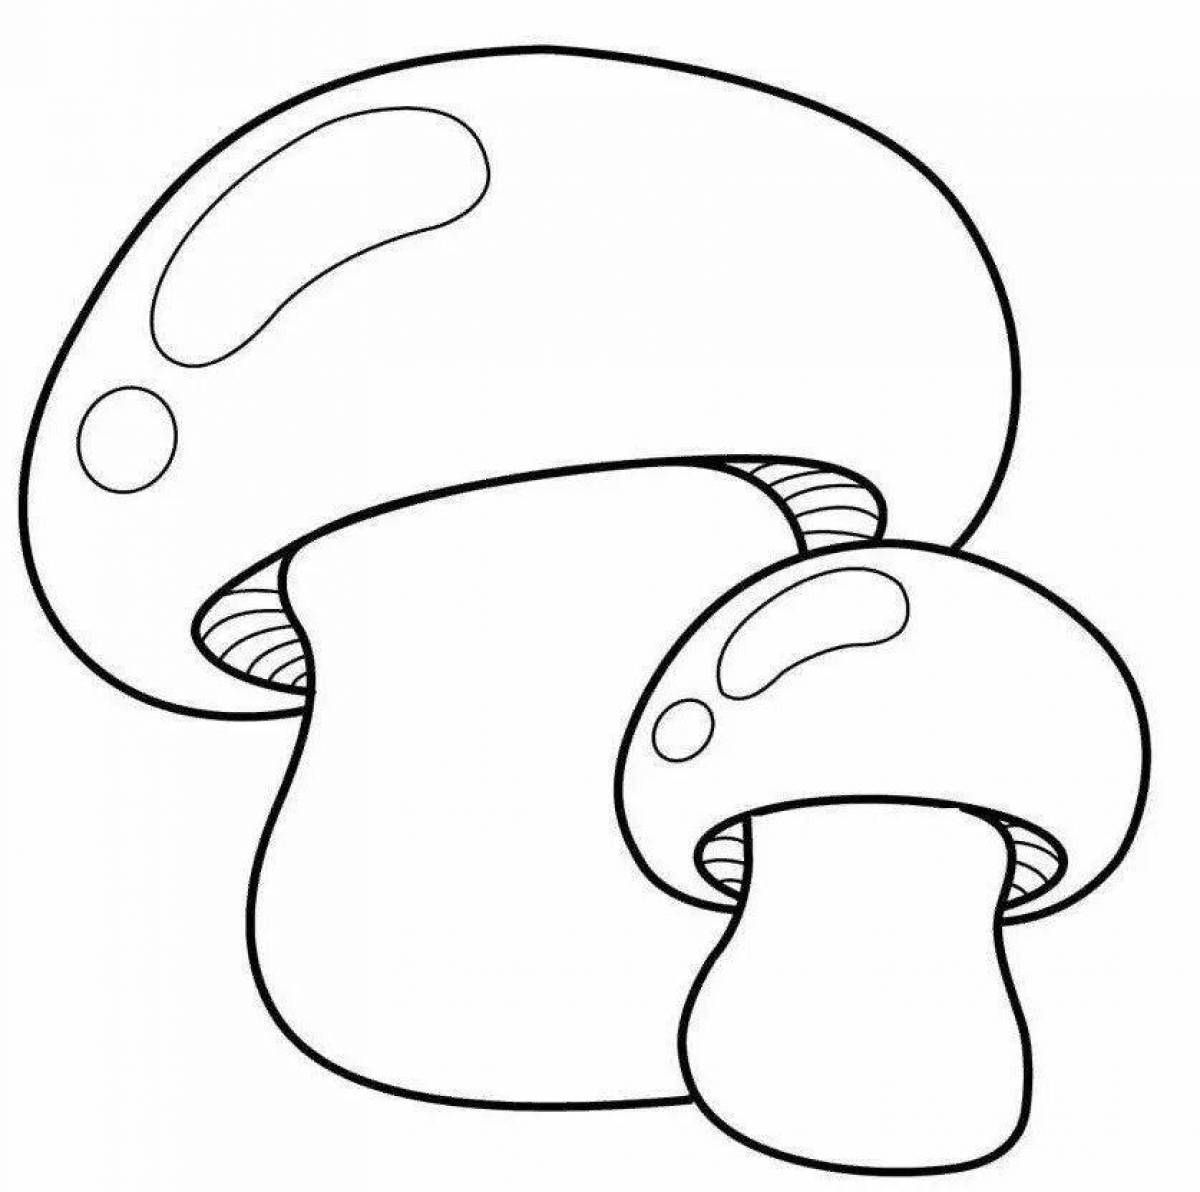 Раскраска элегантный белый гриб